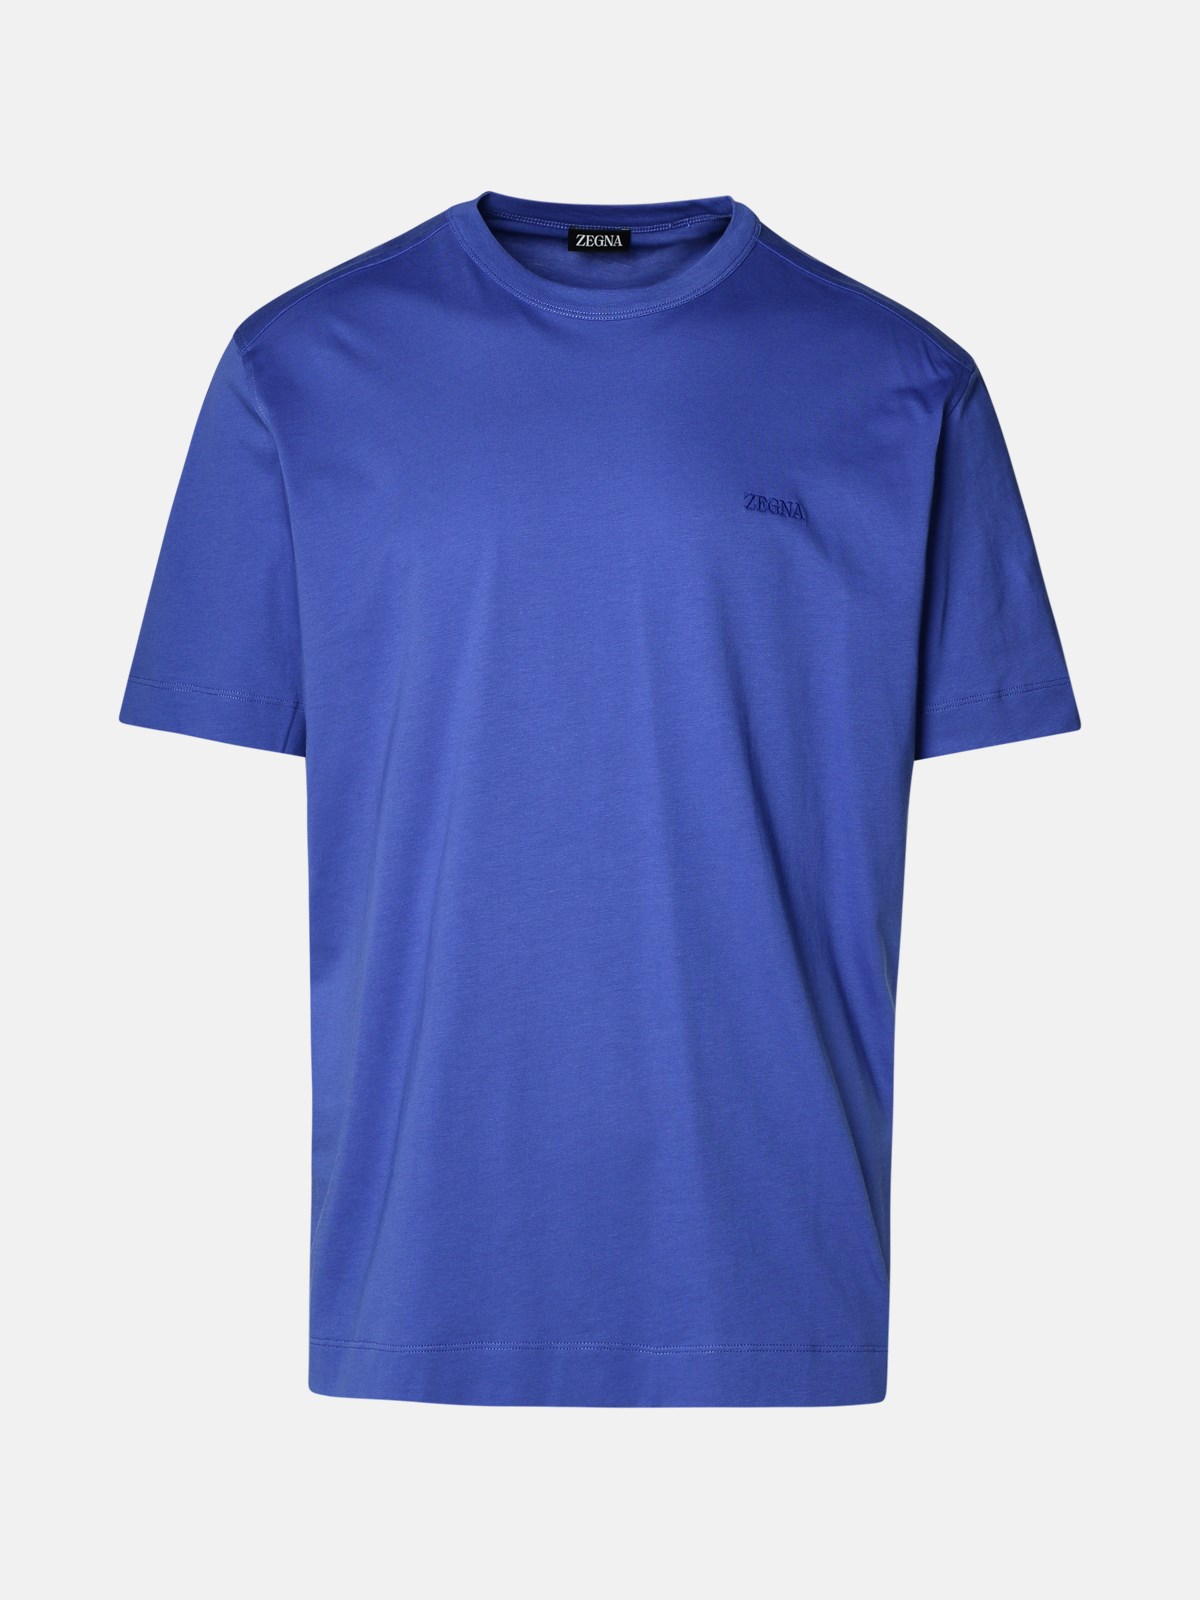 Shop Zegna Blue Cotton T-shirt